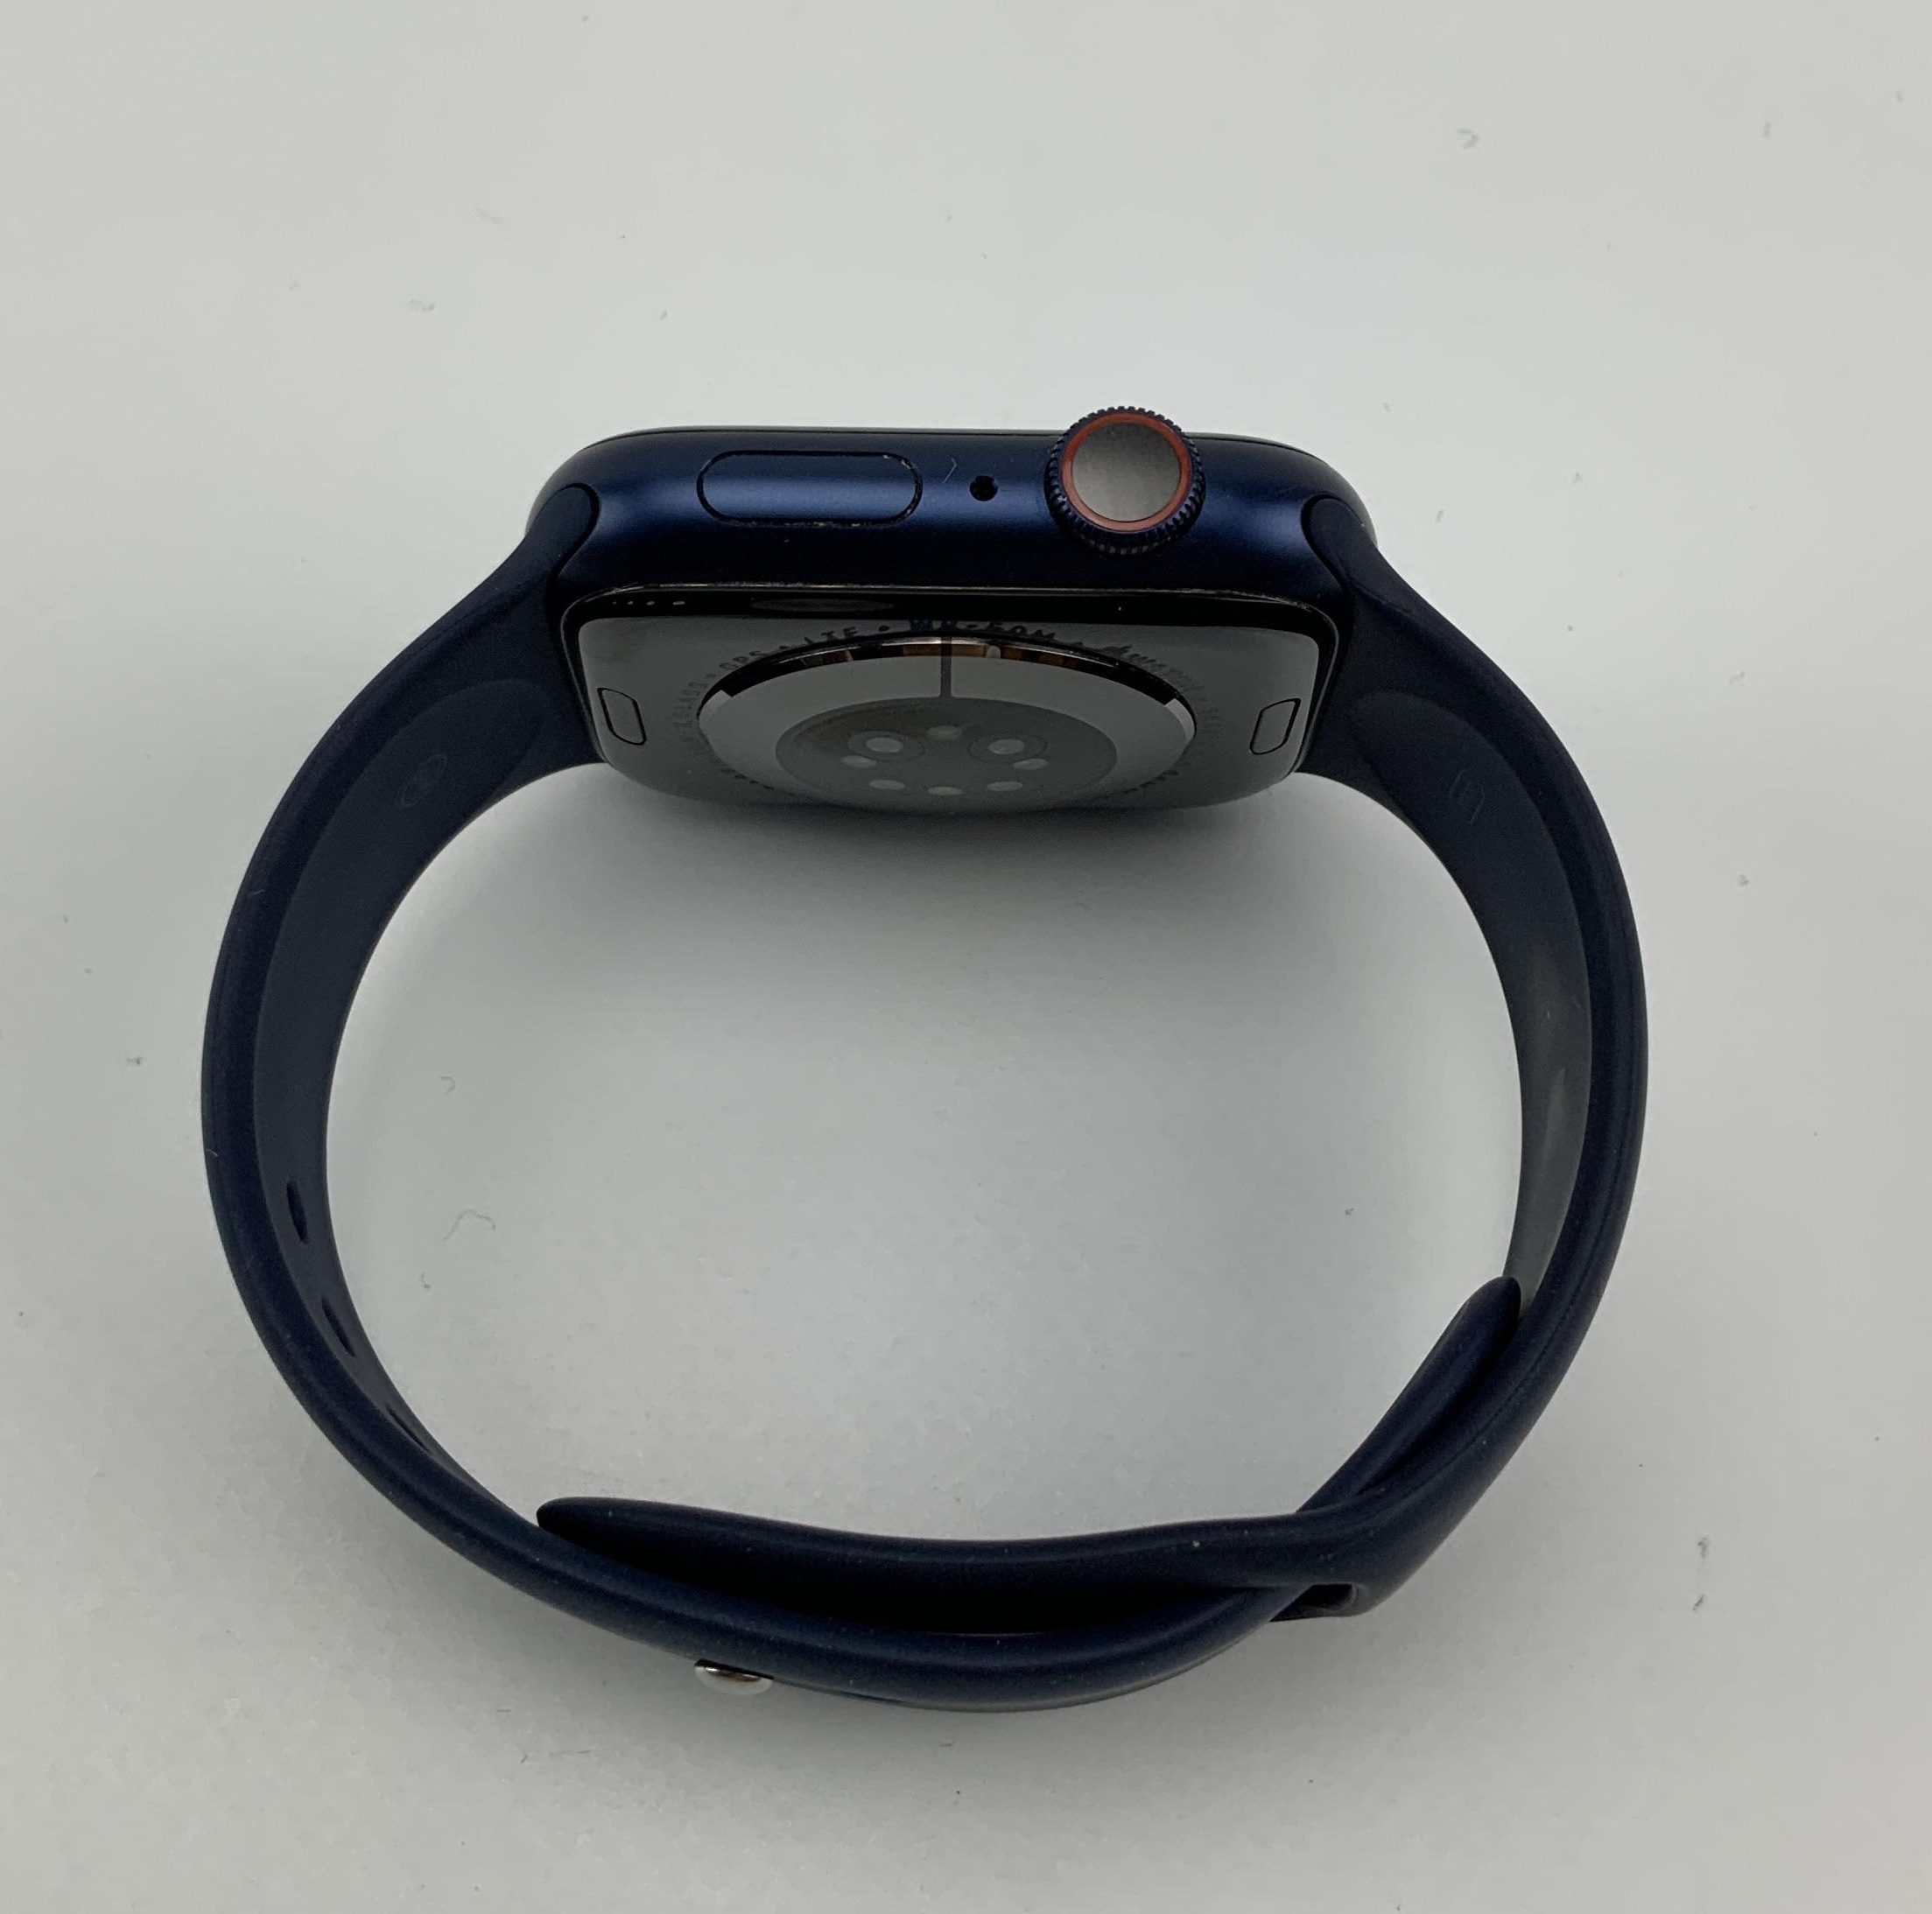 Watch Series 6 Aluminum Cellular (44mm), Blue, imagen 2